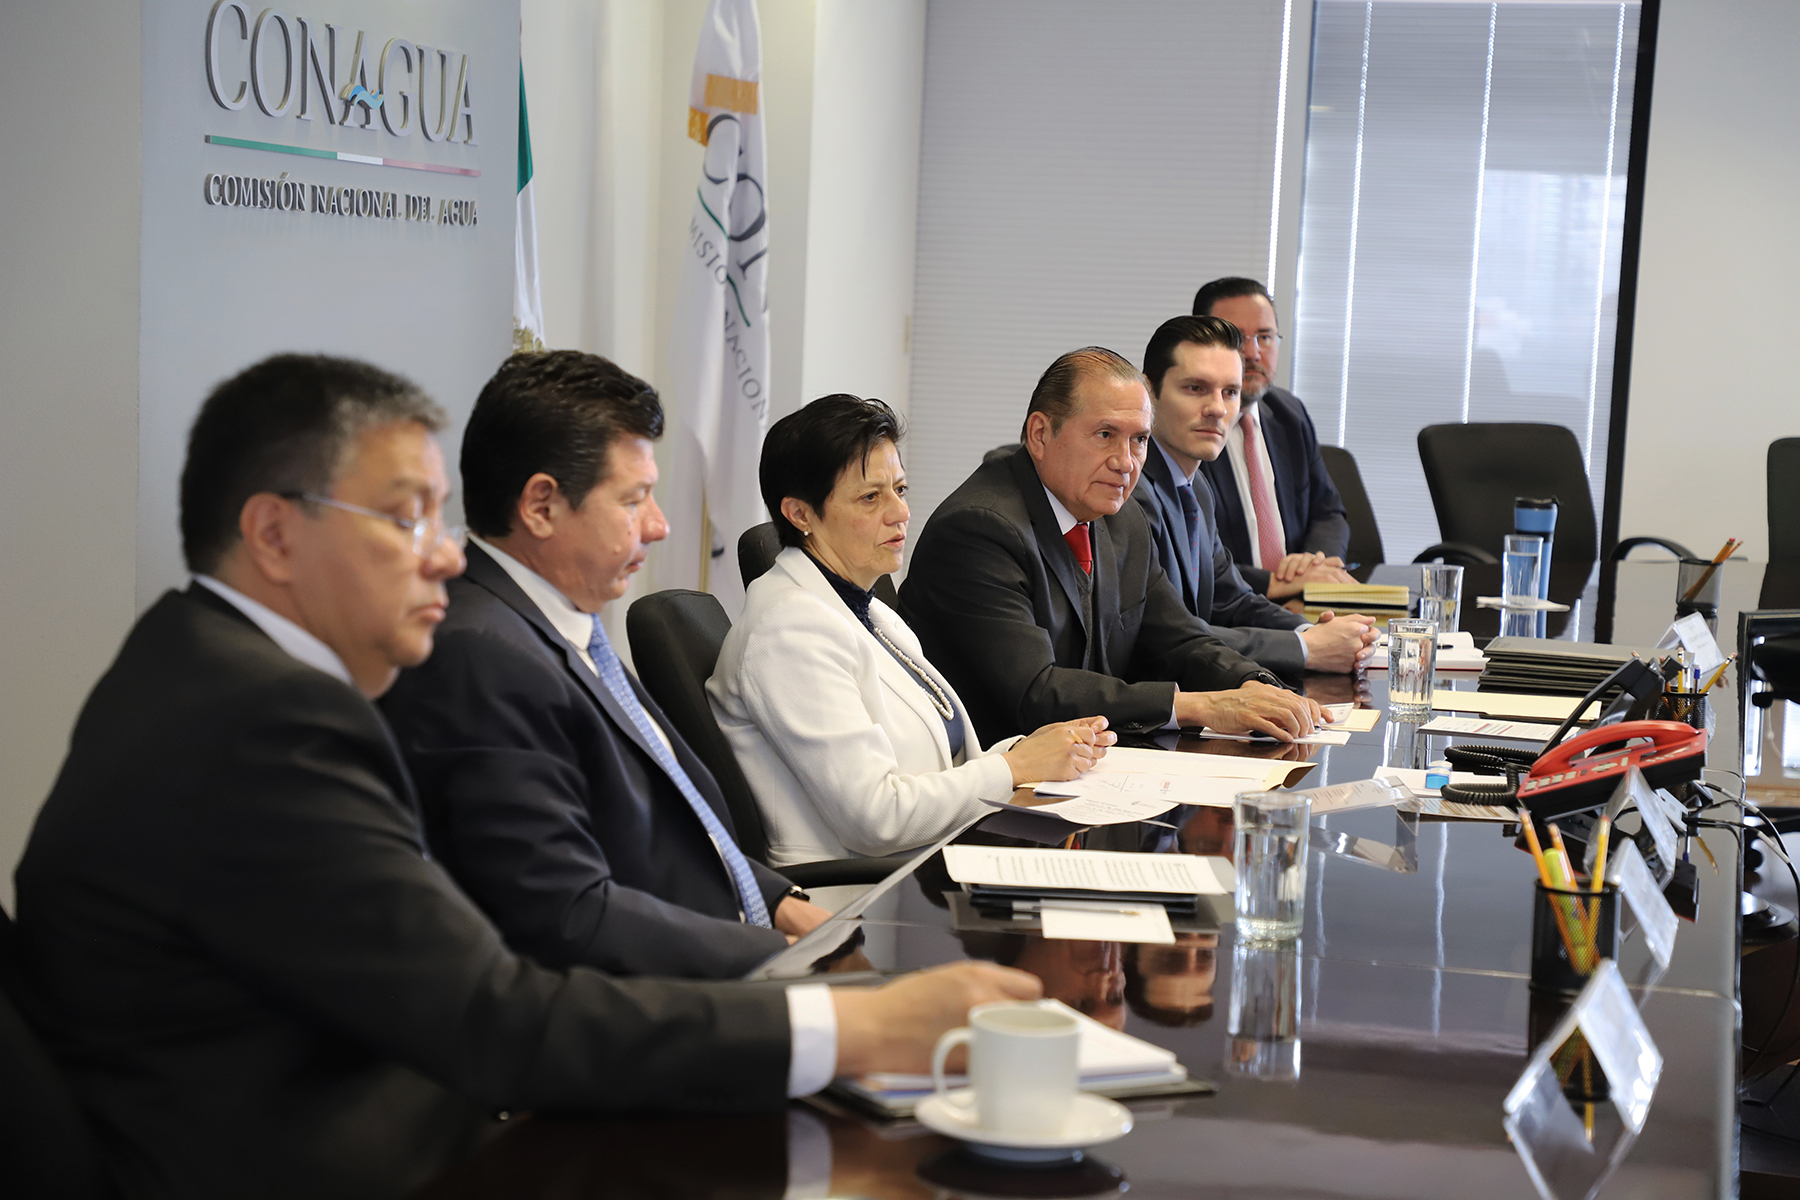 La Directora General de la Conagua, Blanca Jiménez Cisneros, celebró que las instituciones conjunten esfuerzos que permitan llevar agua potable a las escuelas de México, sobre todo a aquellas ubicadas en zonas de alta marginación.